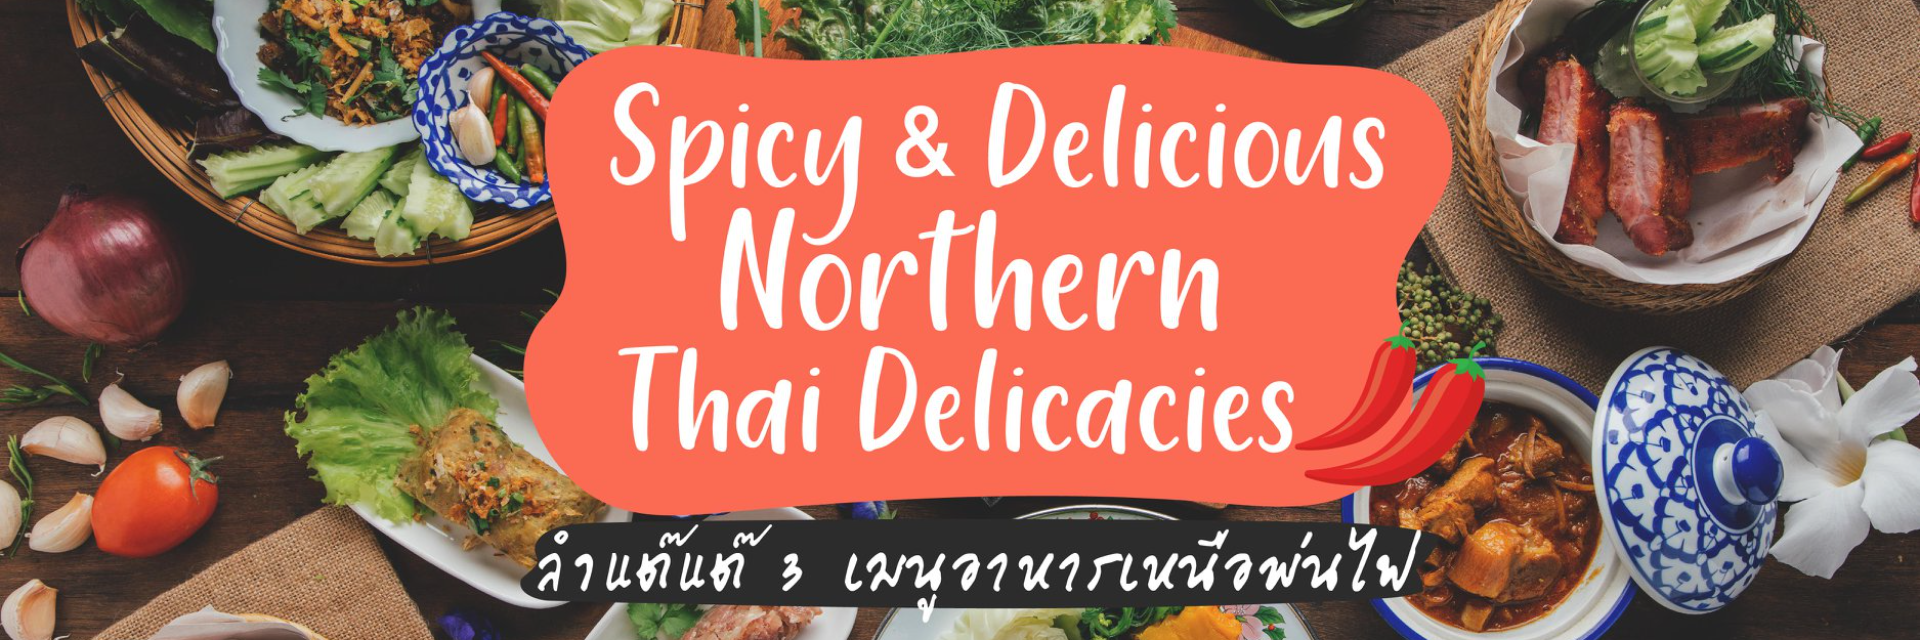 Spicy & Delicious Northern Thai Delicacies